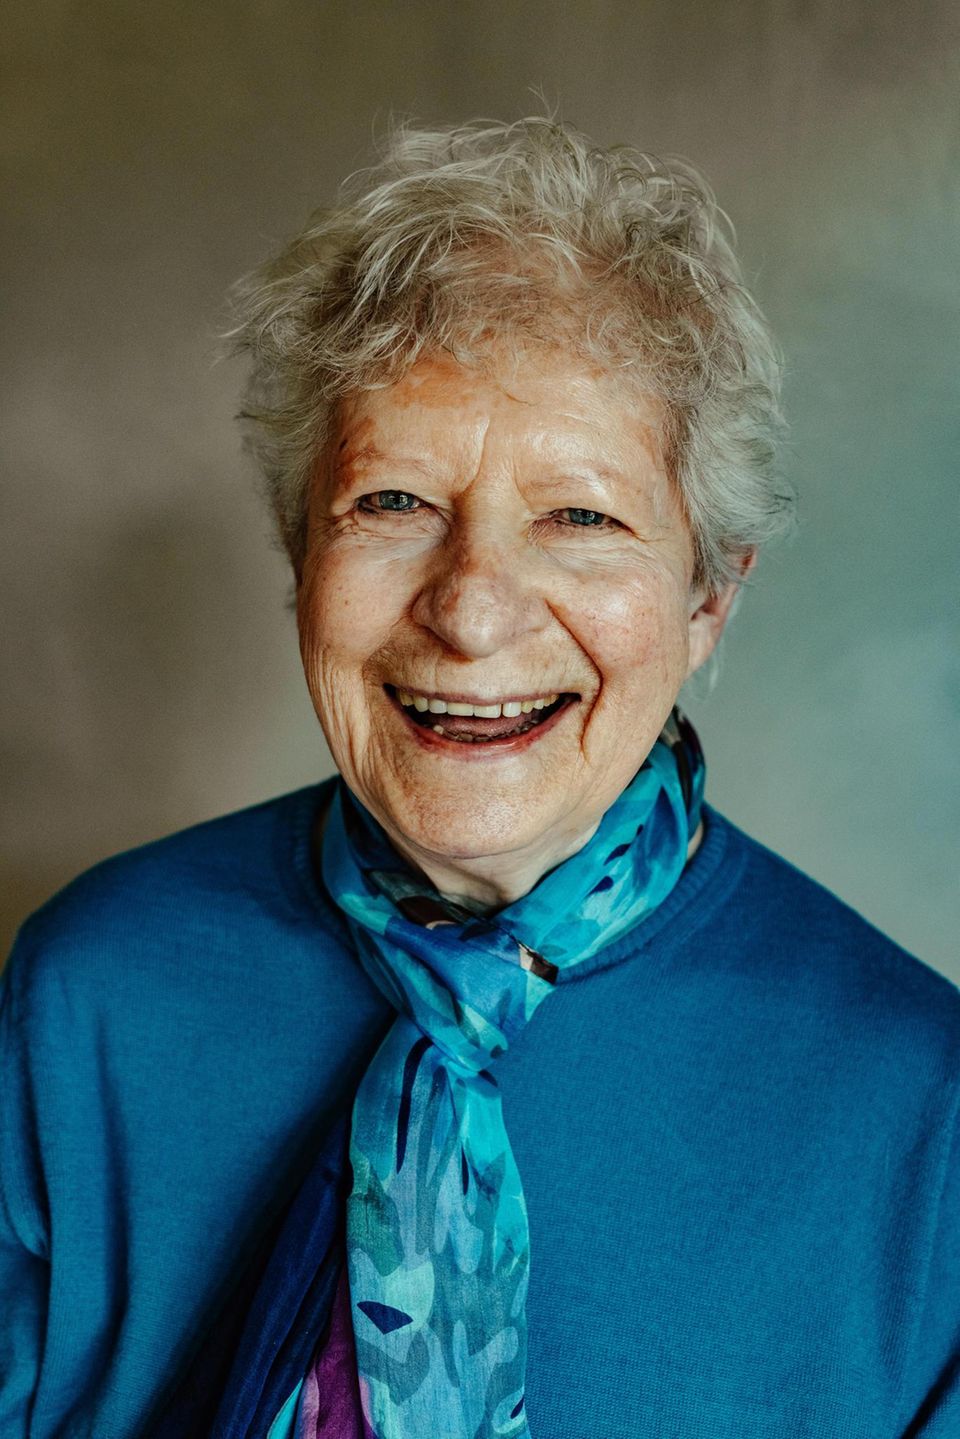 La grand-mère : Irmgard Nippe, 97 ans, a vécu à Leipzig et voulait devenir créatrice de mode après la guerre. Lorsque le régime de la RDA lui a interdit de terminer ses études, elle est devenue dessinatrice en bâtiment. En 1955, elle a fui à Hanovre via Berlin, où elle a ensuite travaillé comme architecte. Elle a une fille (Beate Appold), est veuve depuis 1993 et vit dans un petit appartement à Rendsburg.